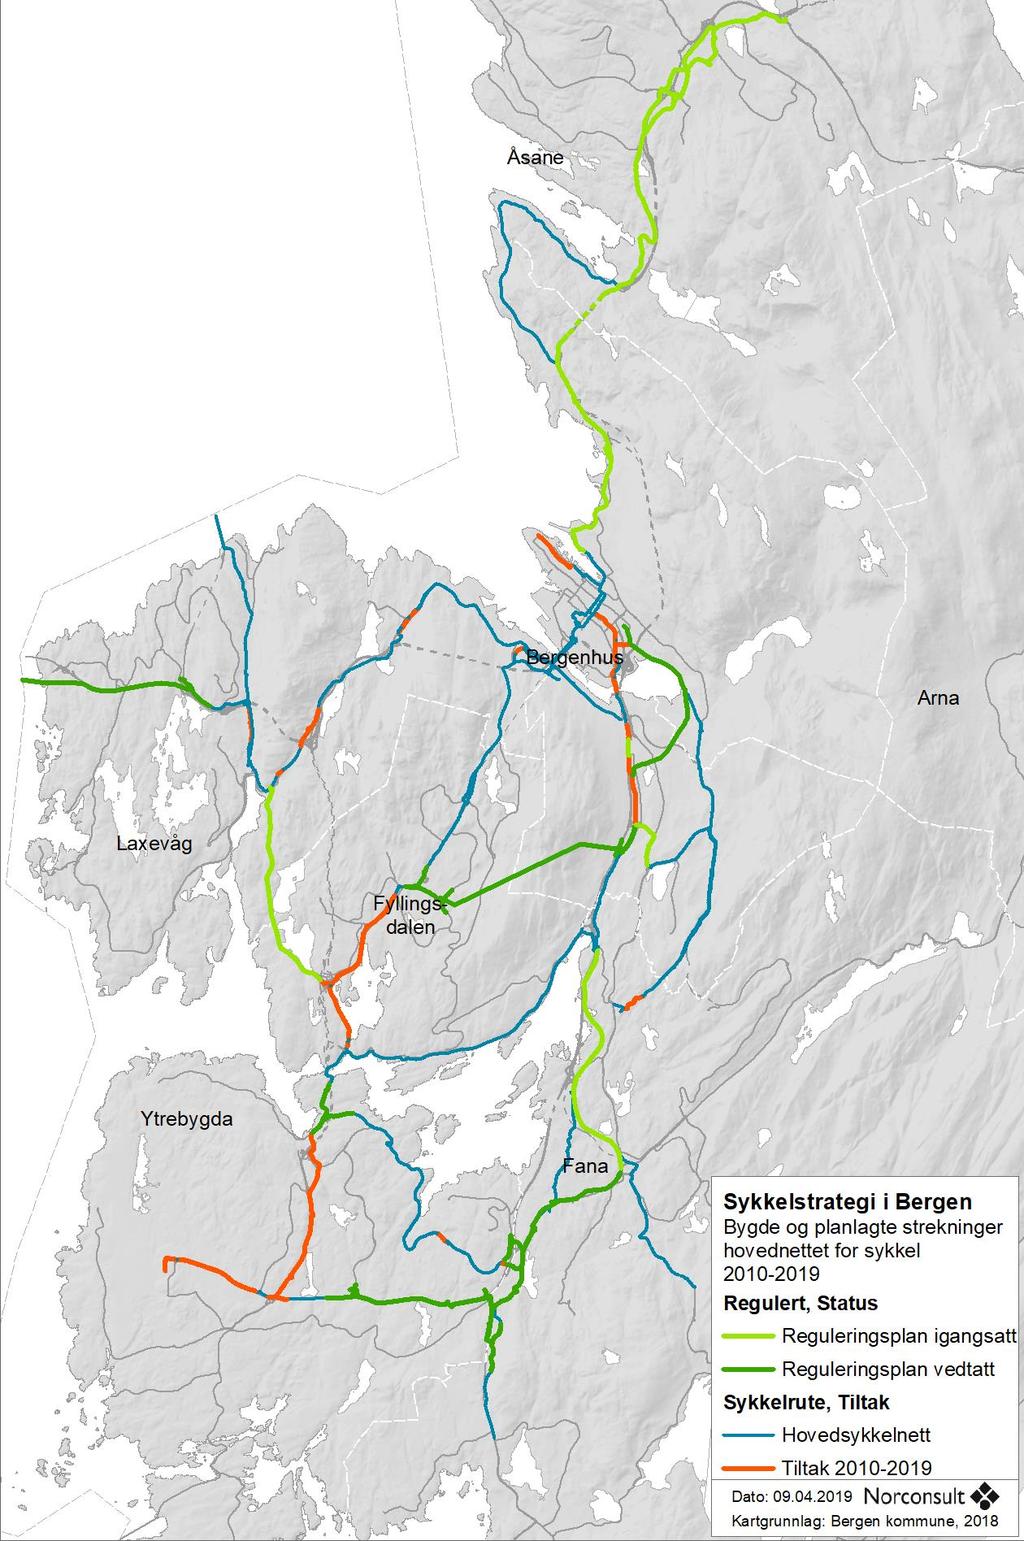 Figur 2: Hovedrutenettet for sykkel i Bergen, bygde traseer i strategiperioden (røde linjer), traseer uten tiltak (blå linjer), traseer